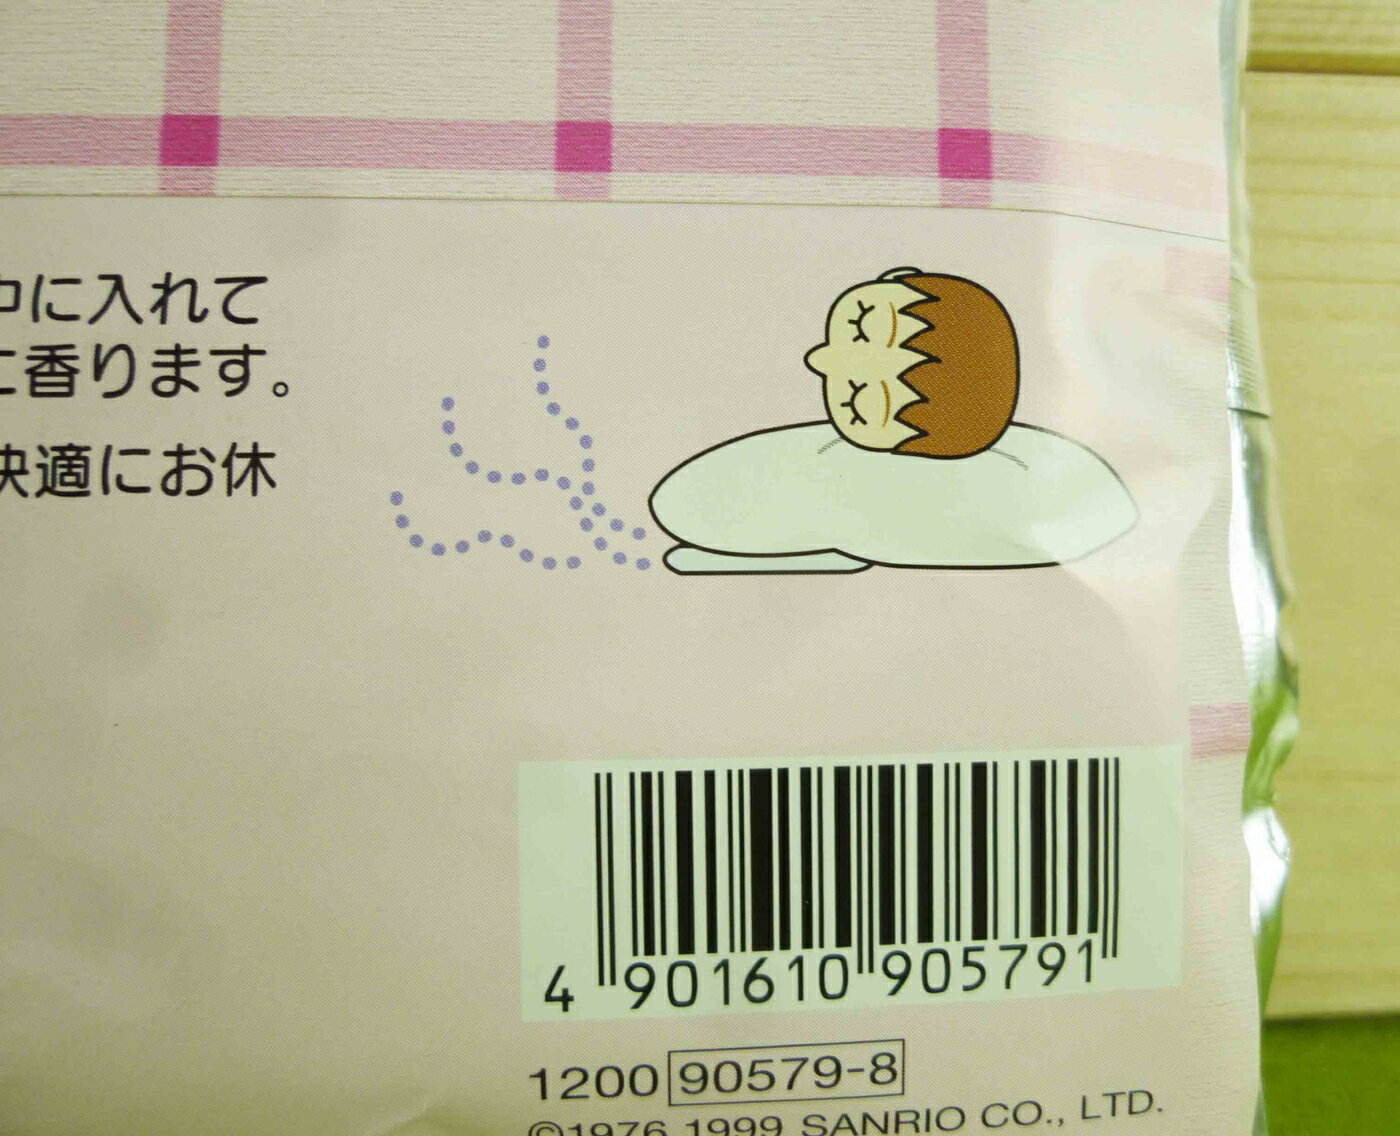 【震撼精品百貨】Hello Kitty 凱蒂貓 枕頭助眠香包【共1款】 震撼日式精品百貨 2